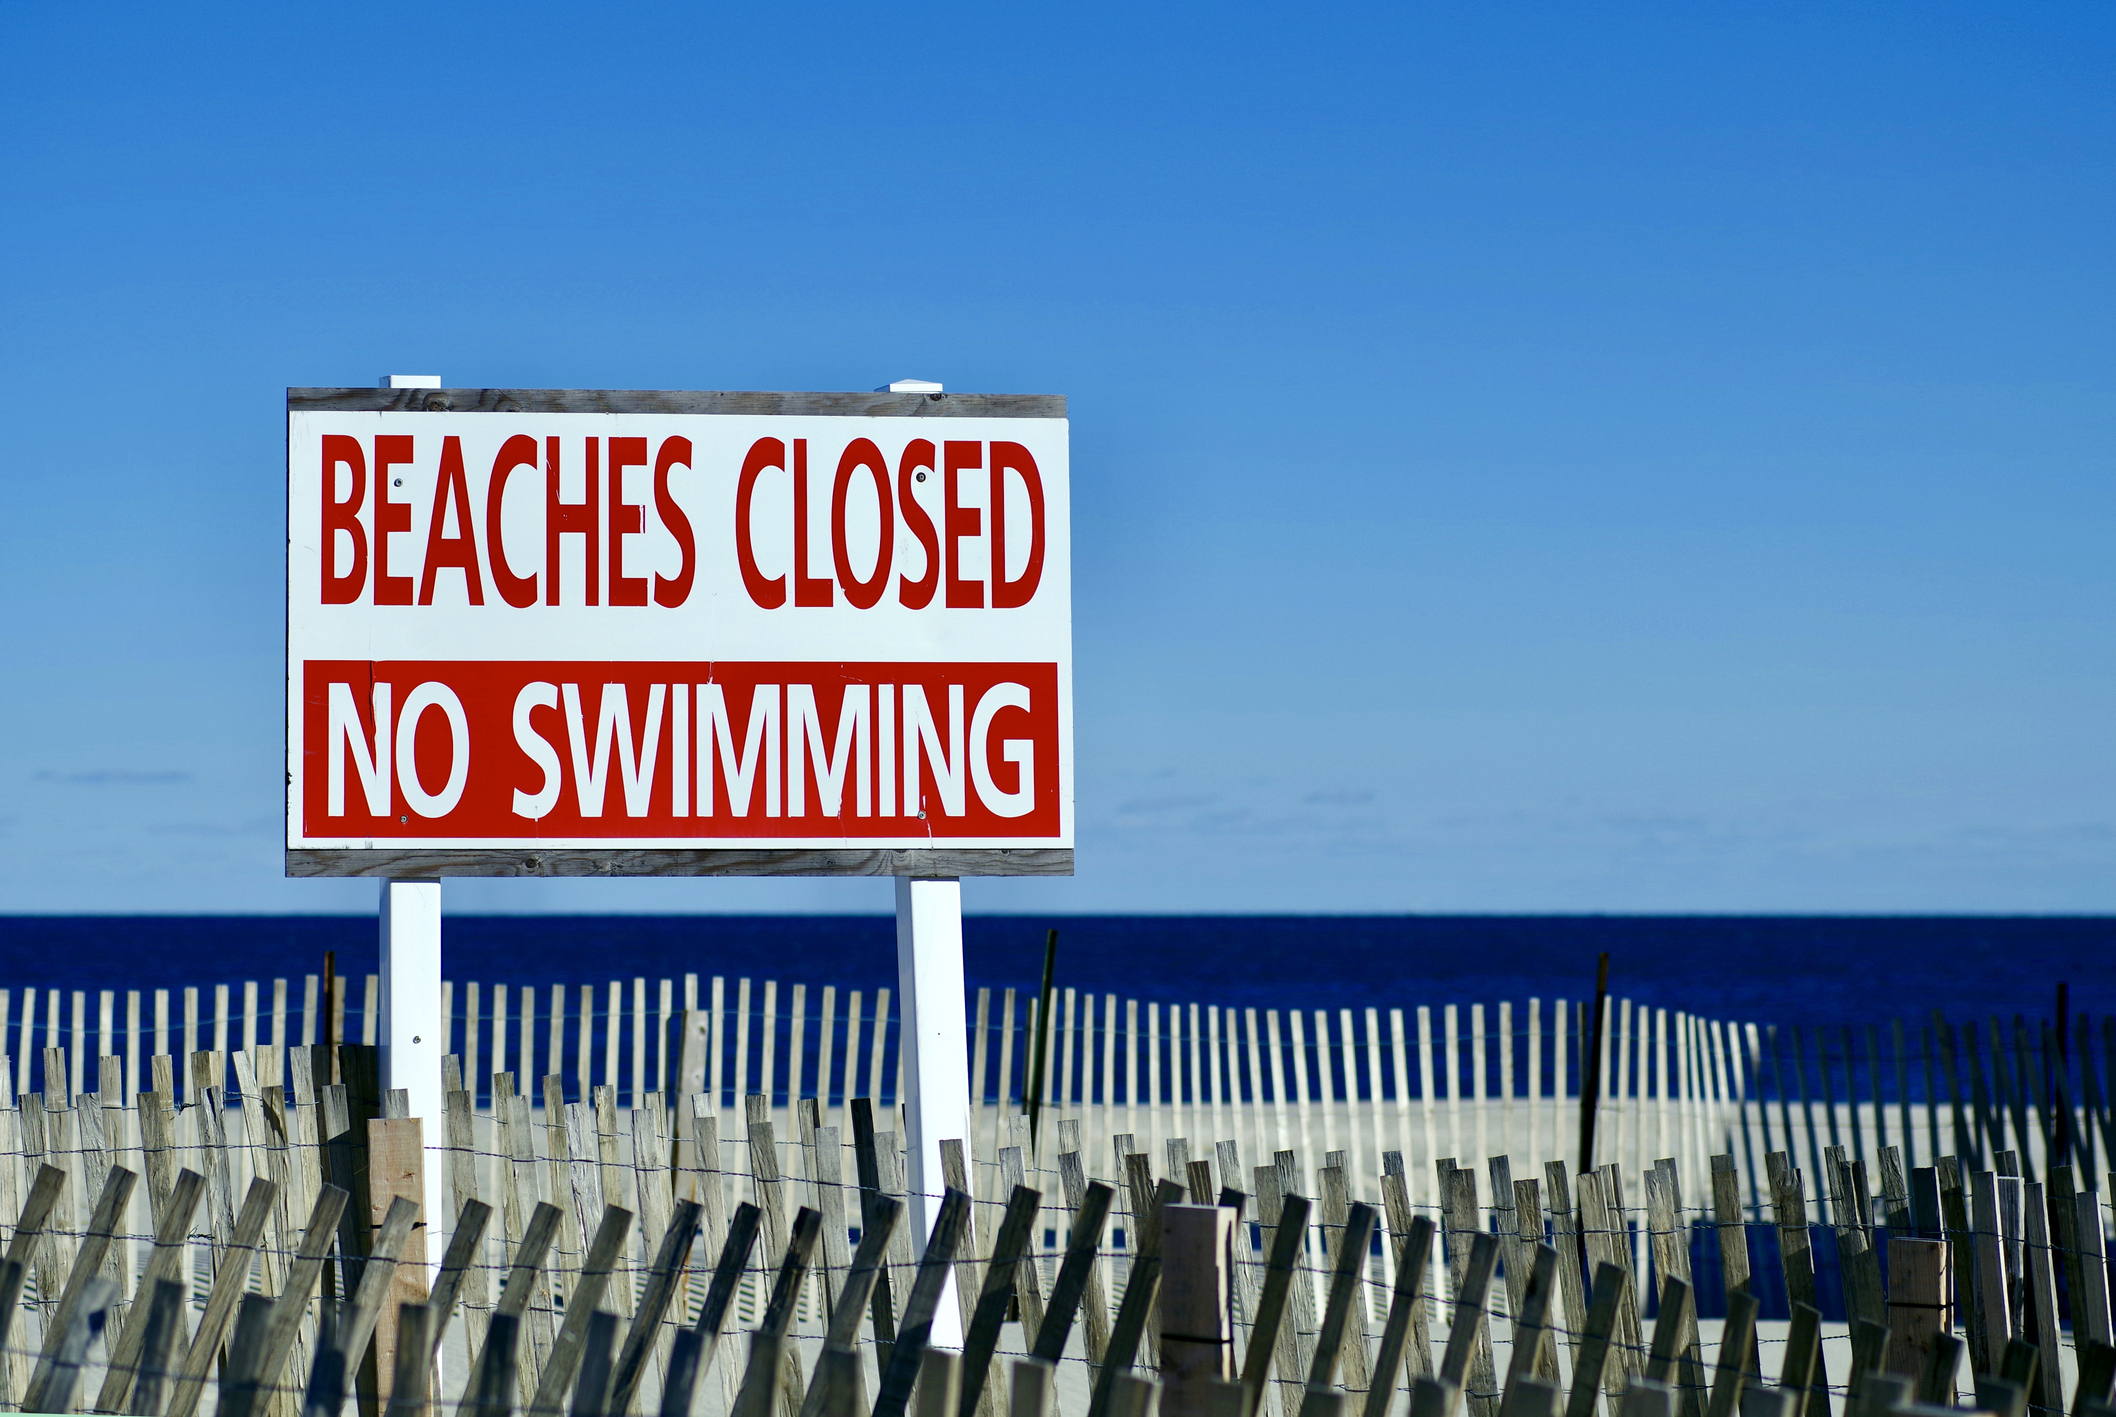 A closed beach